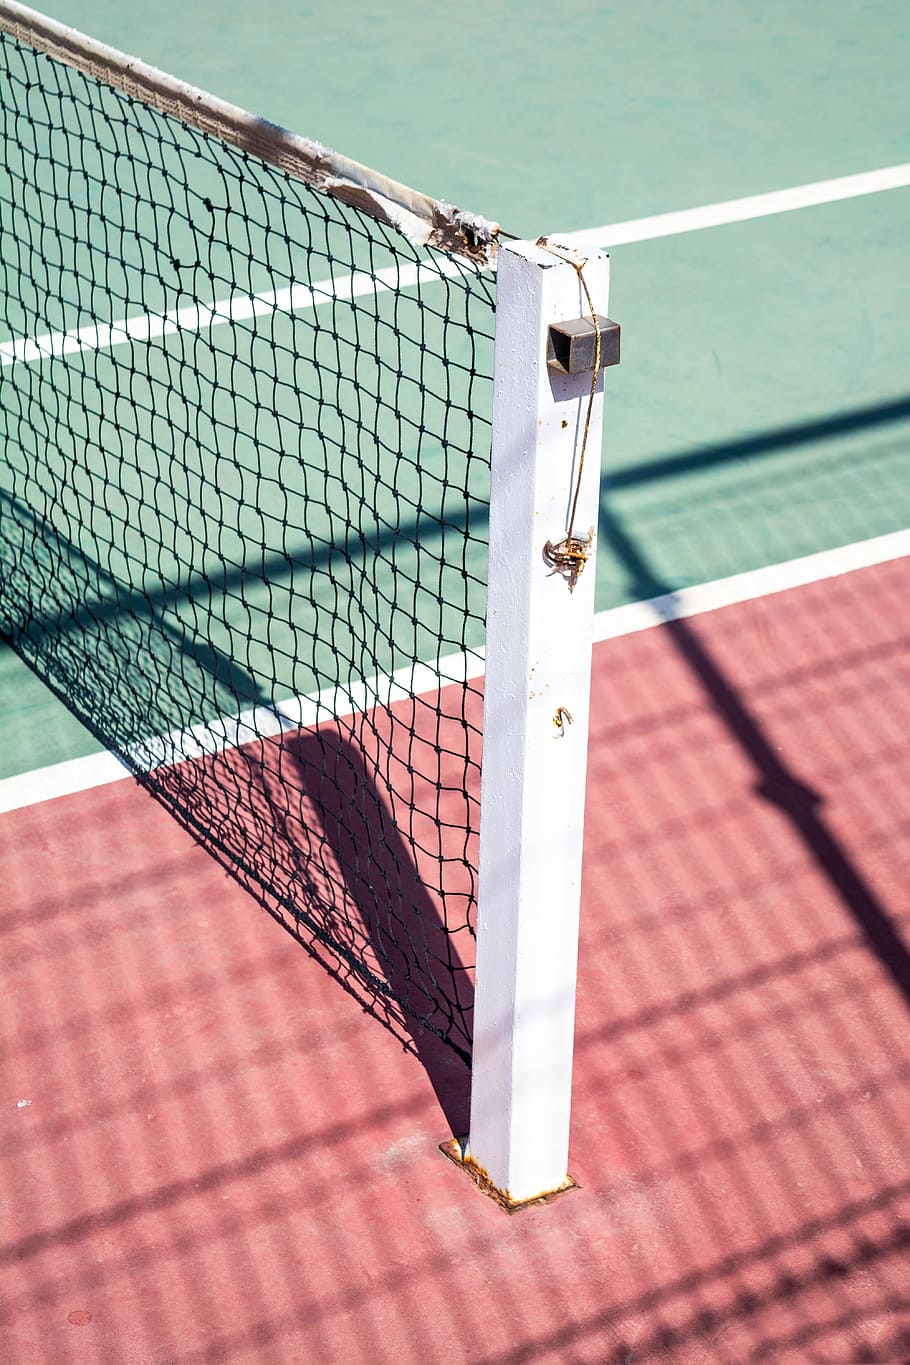 tennis, court, sport, field, net, sunny, net - sports equipment, day, sunlight, high angle view